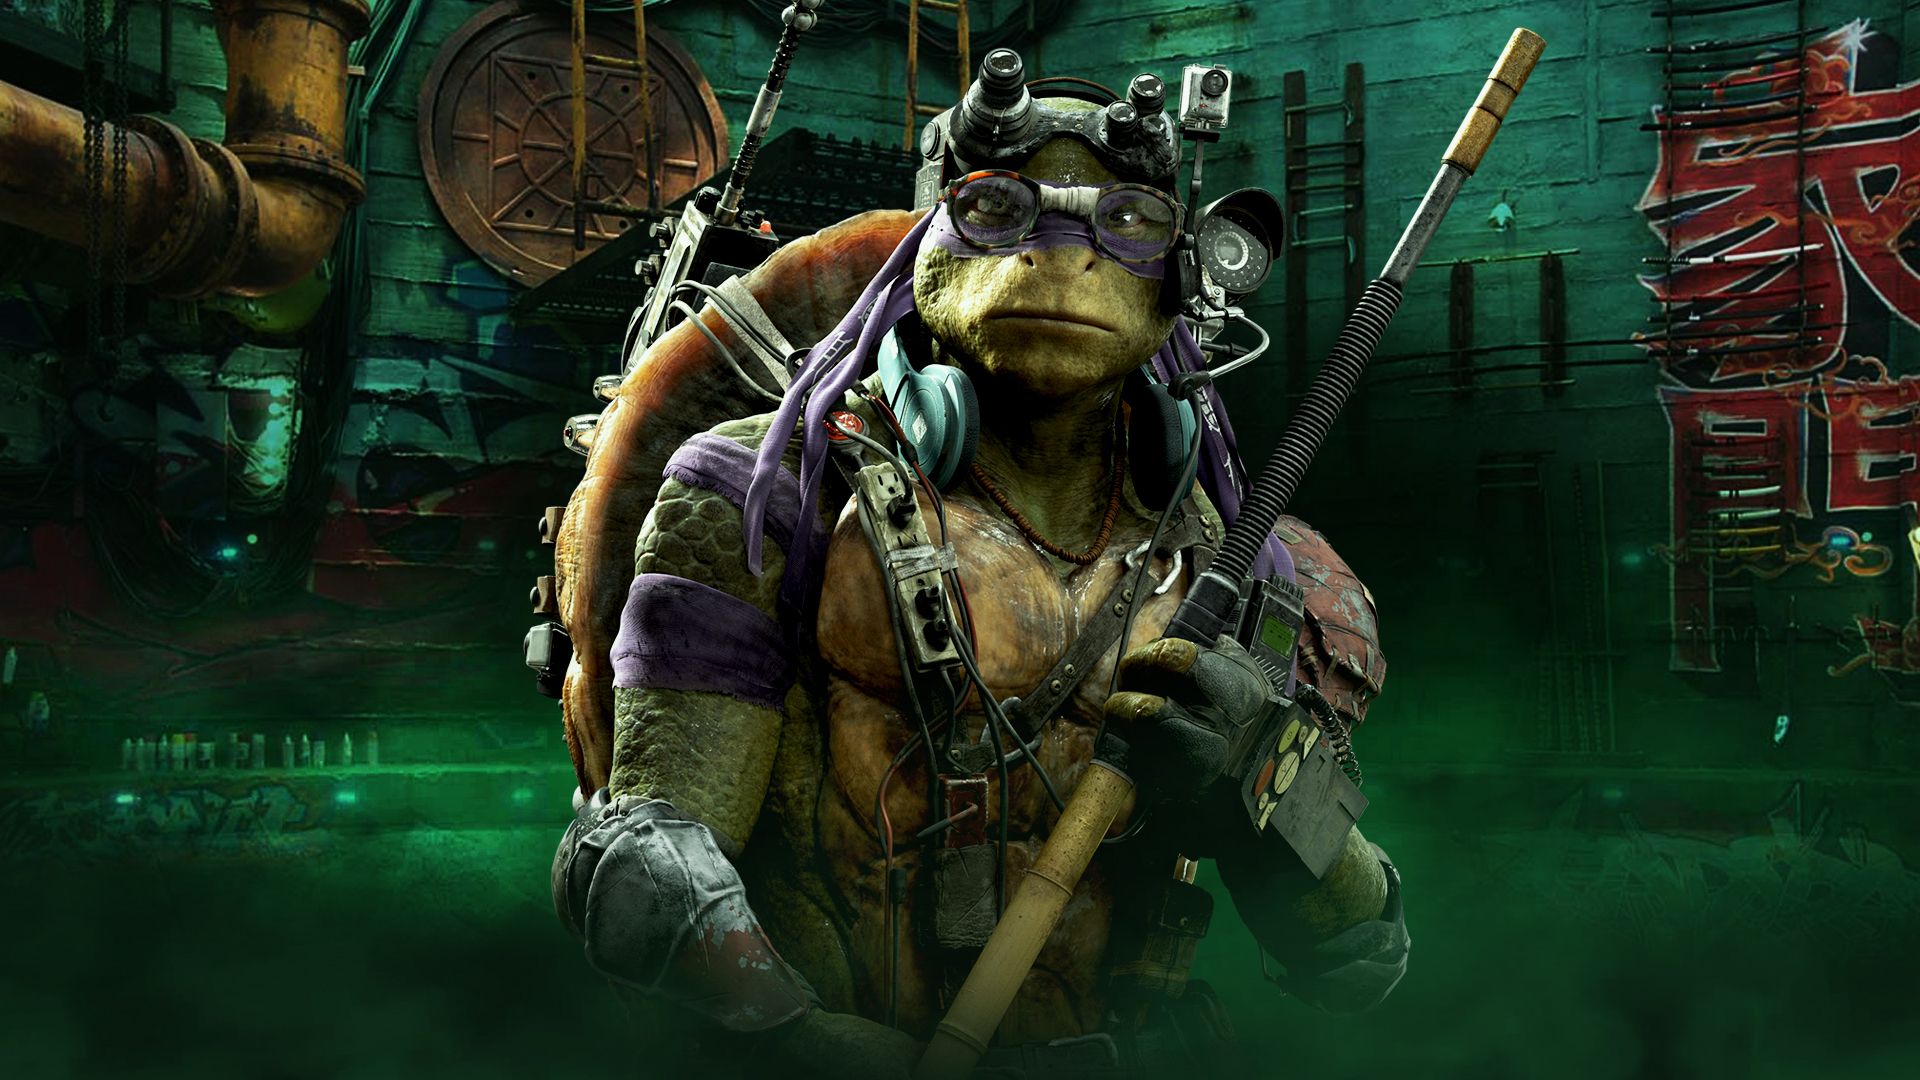 Descarga gratuita de fondo de pantalla para móvil de Películas, Donatello (Tmnt), Tortugas Ninja, Las Tortugas Ninja, Ninja Turtles (2014).